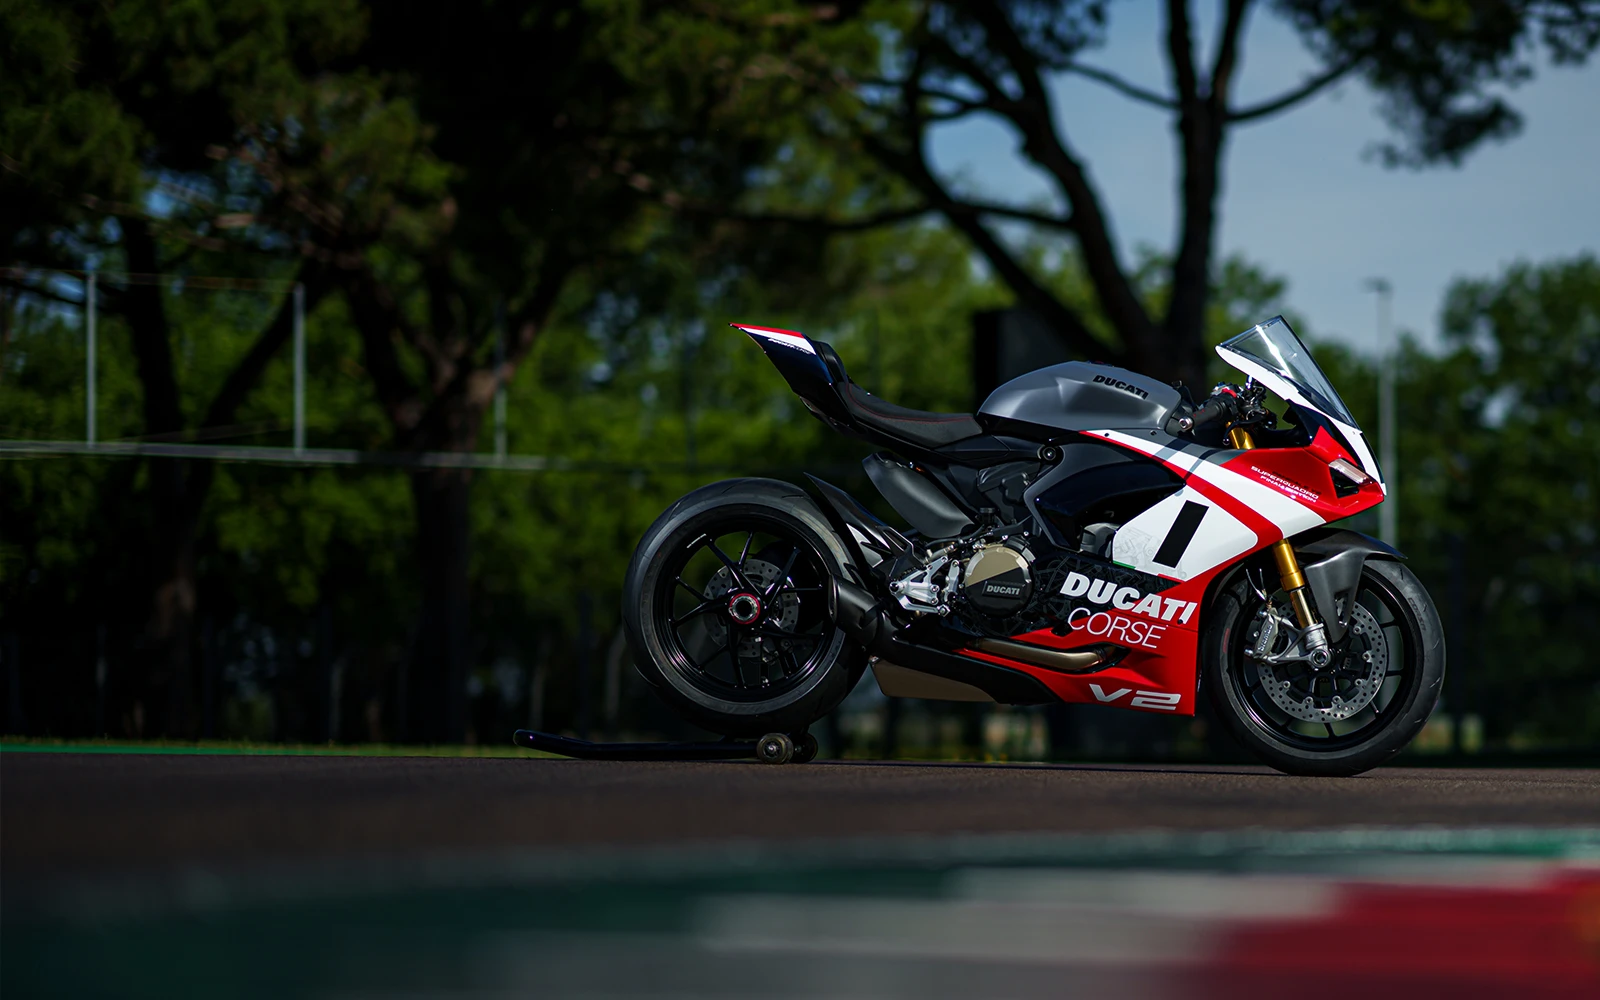 Ducati Final edition